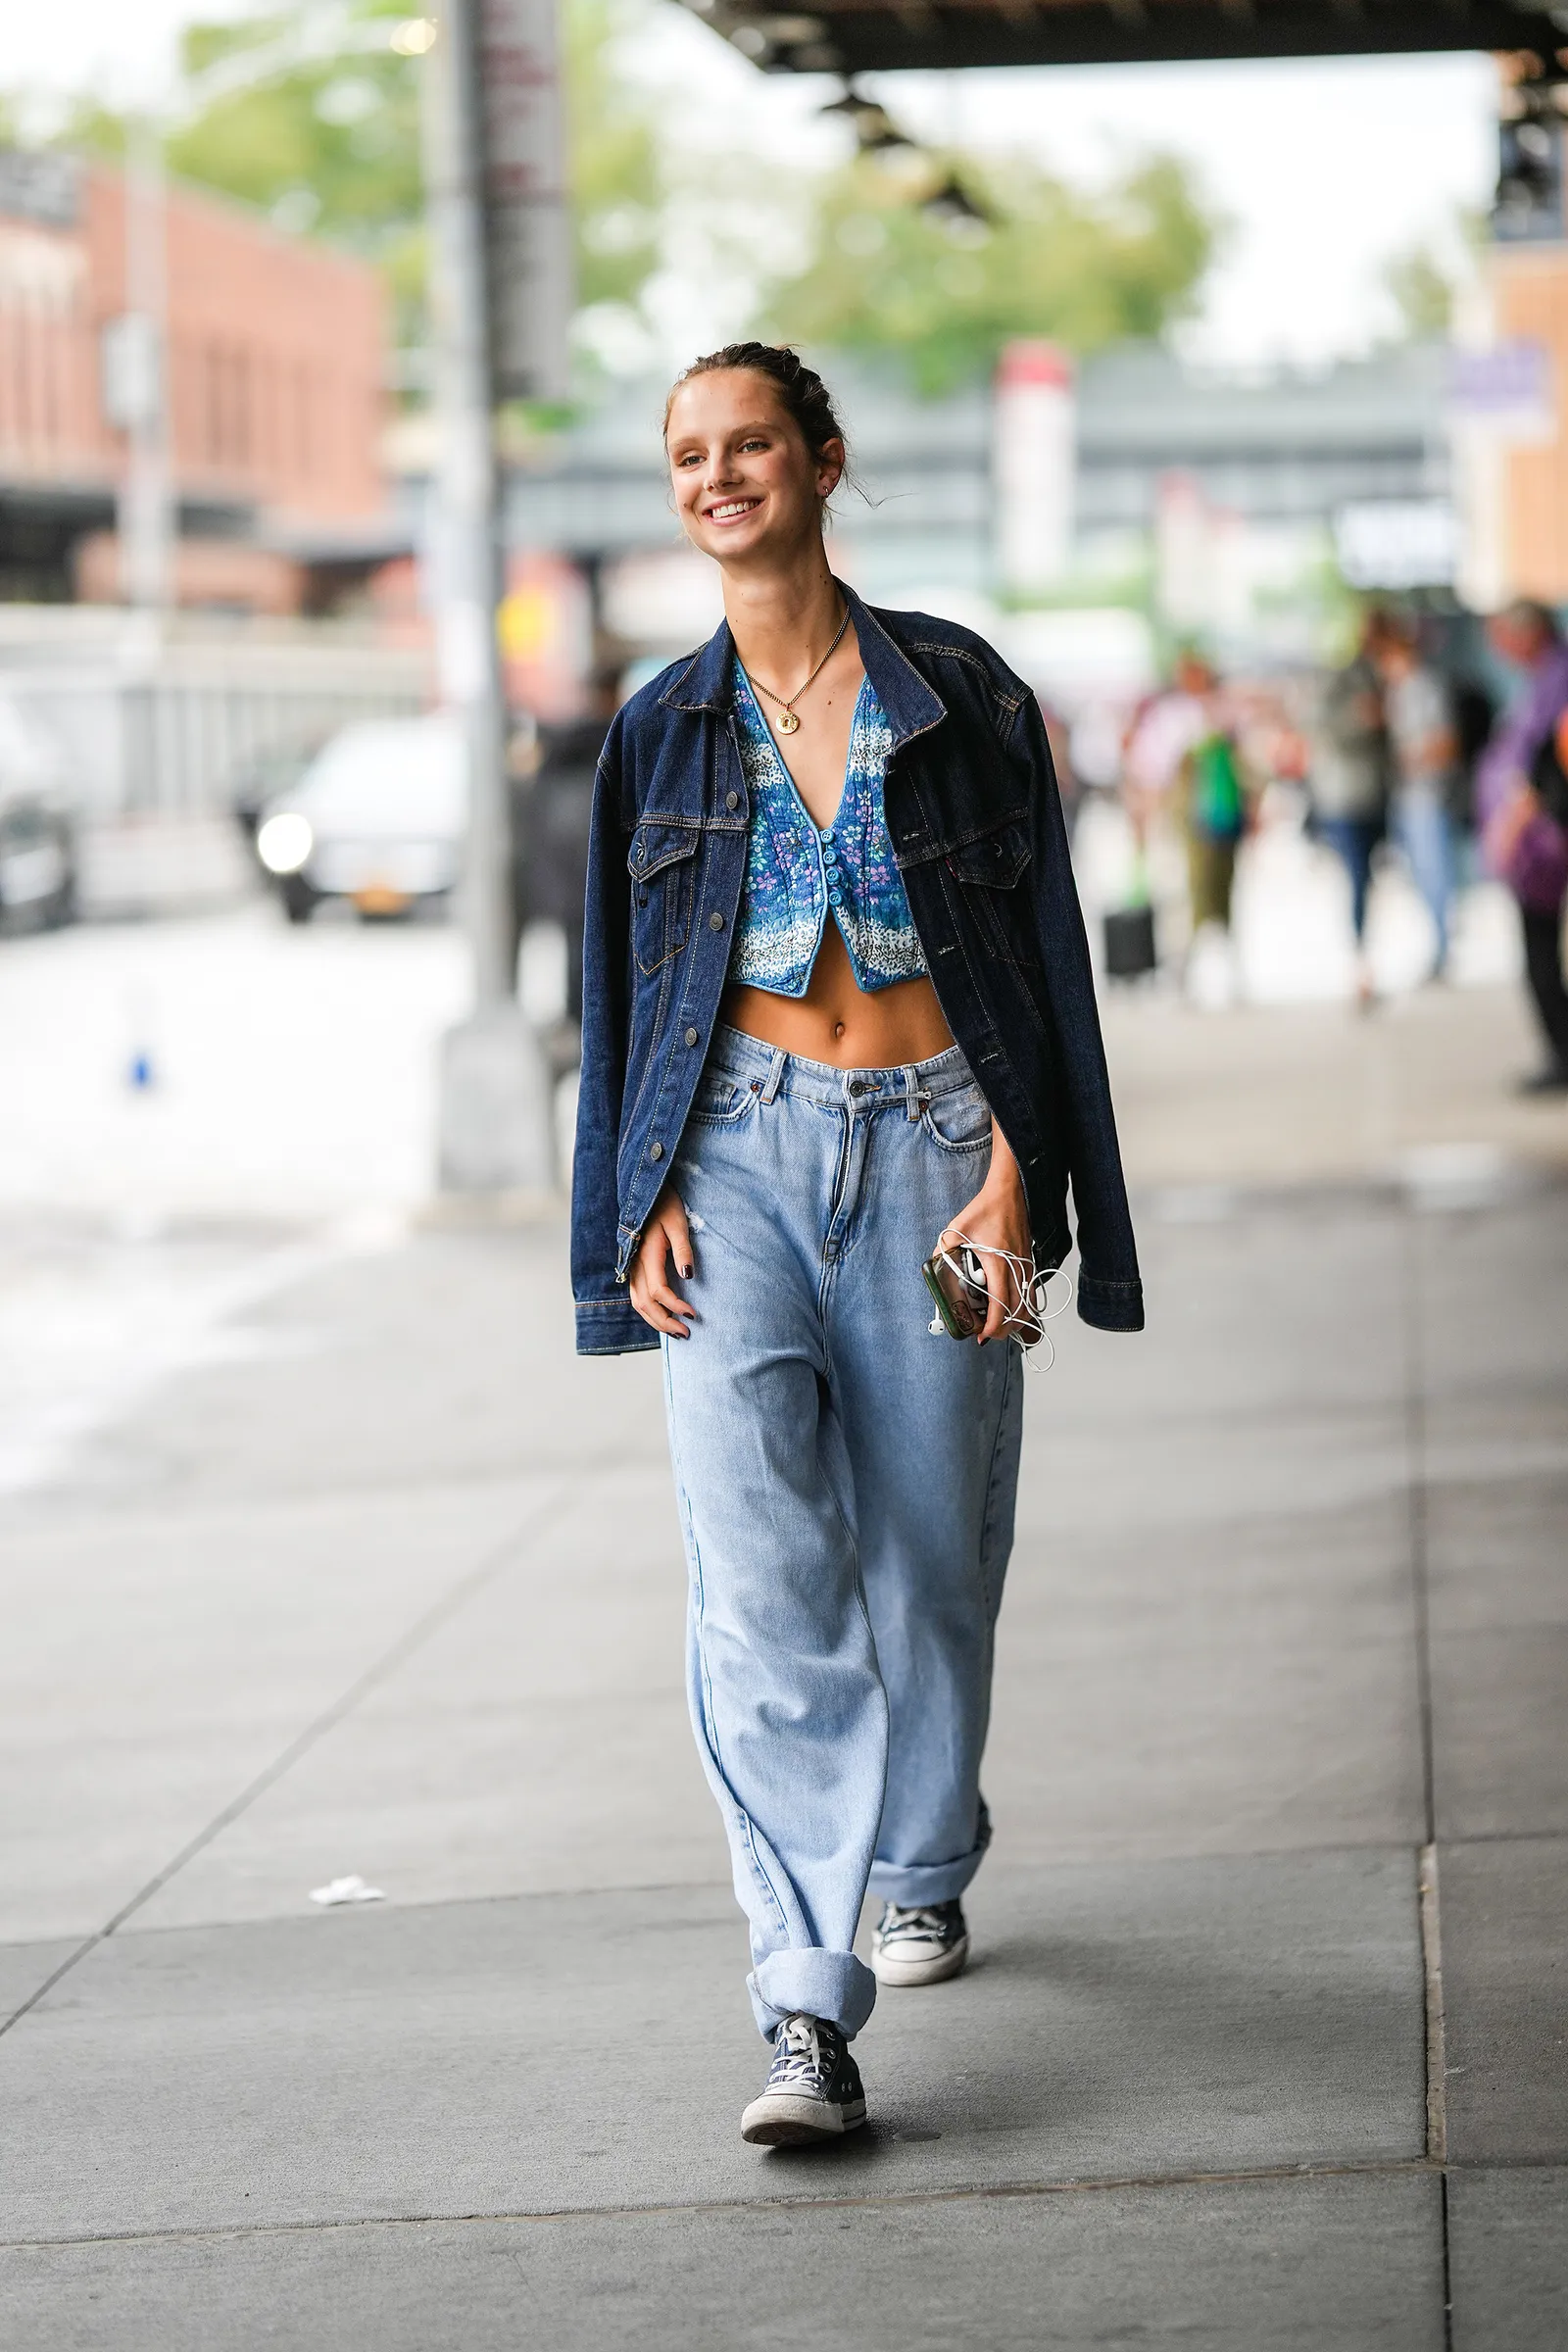 Zestaw klasyczne trampki i szerokie jeansy z dopasowaną bluzką (Fot. Getty Images)